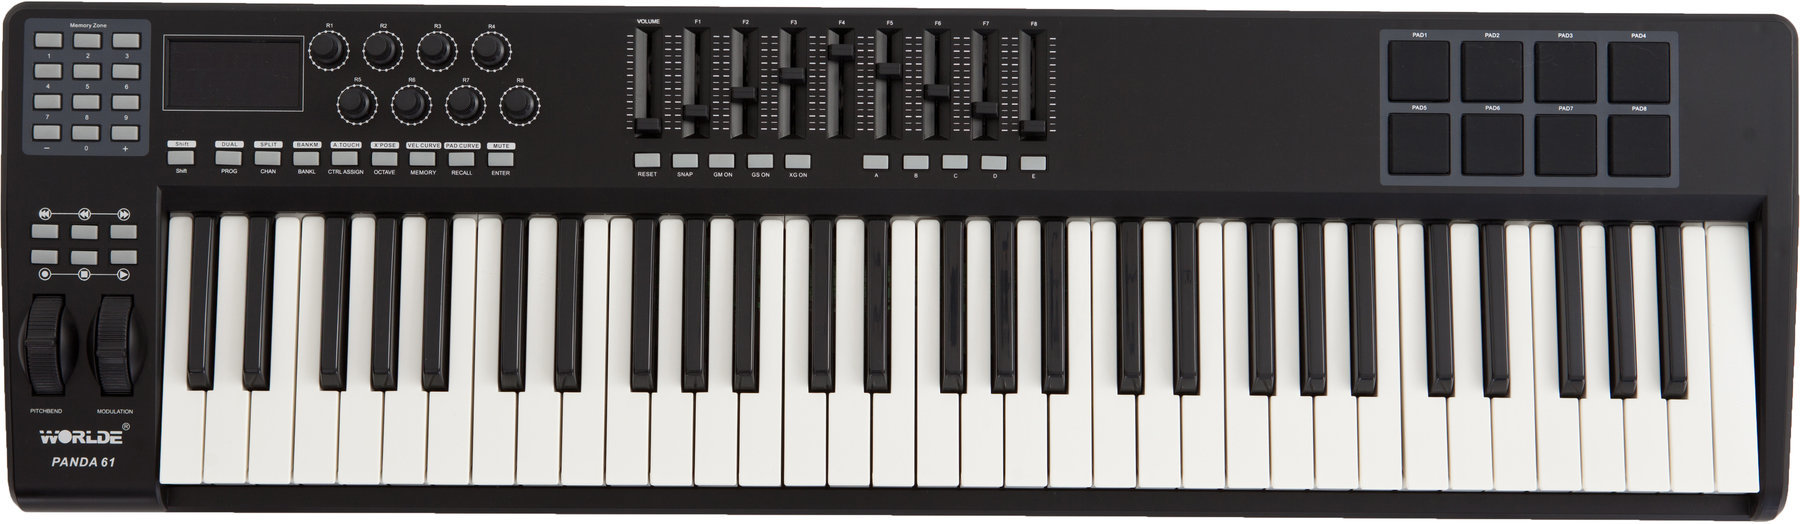 Master Keyboard Worlde PANDA-61